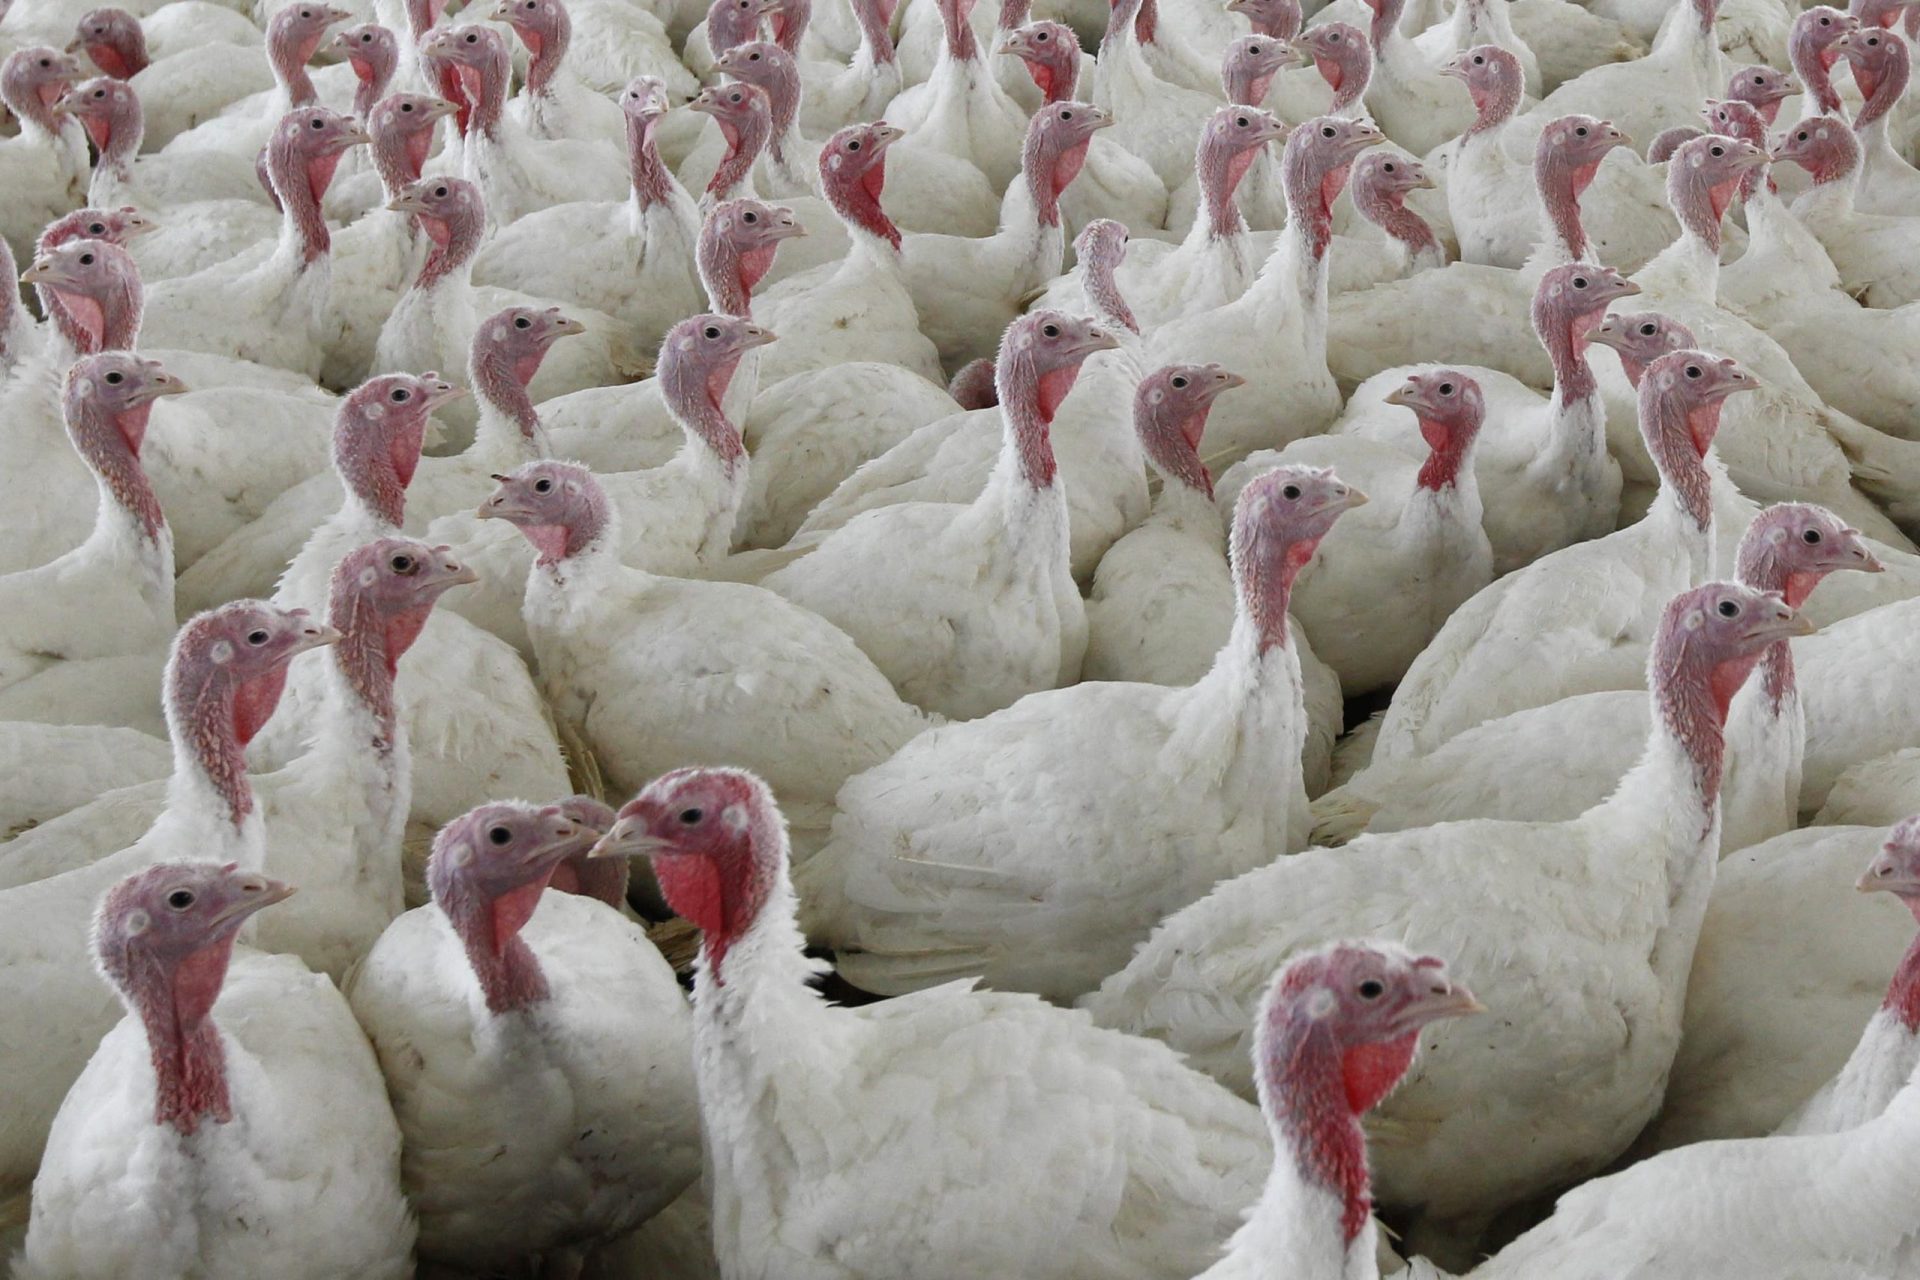 Lucha contra la intoxicación alimentaria: se proponen cambios radicales en las aves de corral